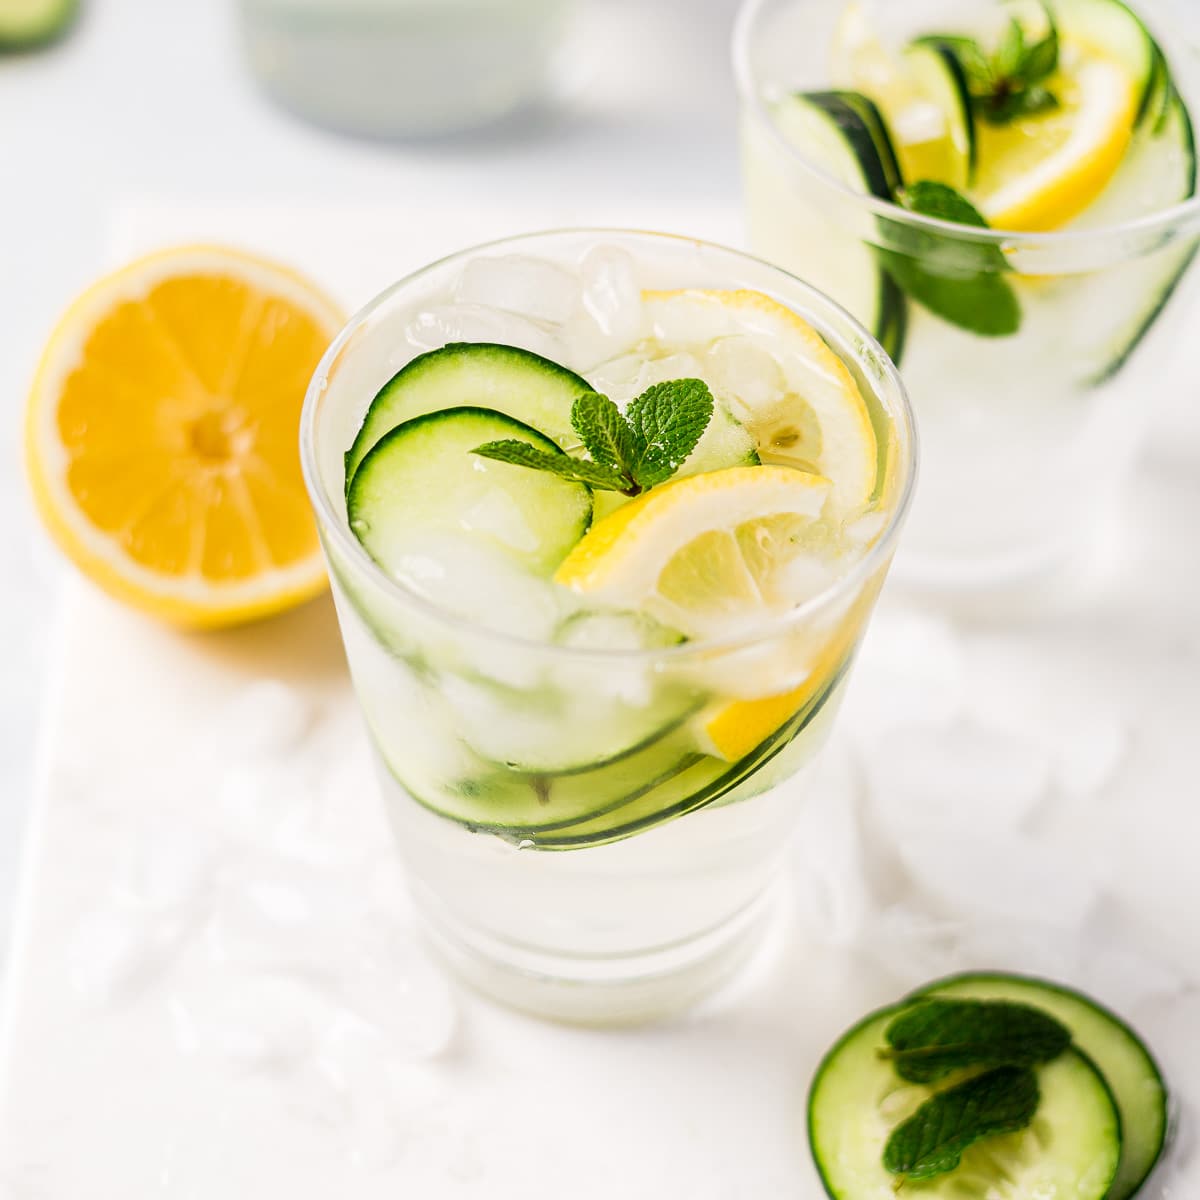 cucumber juice and lemon juice